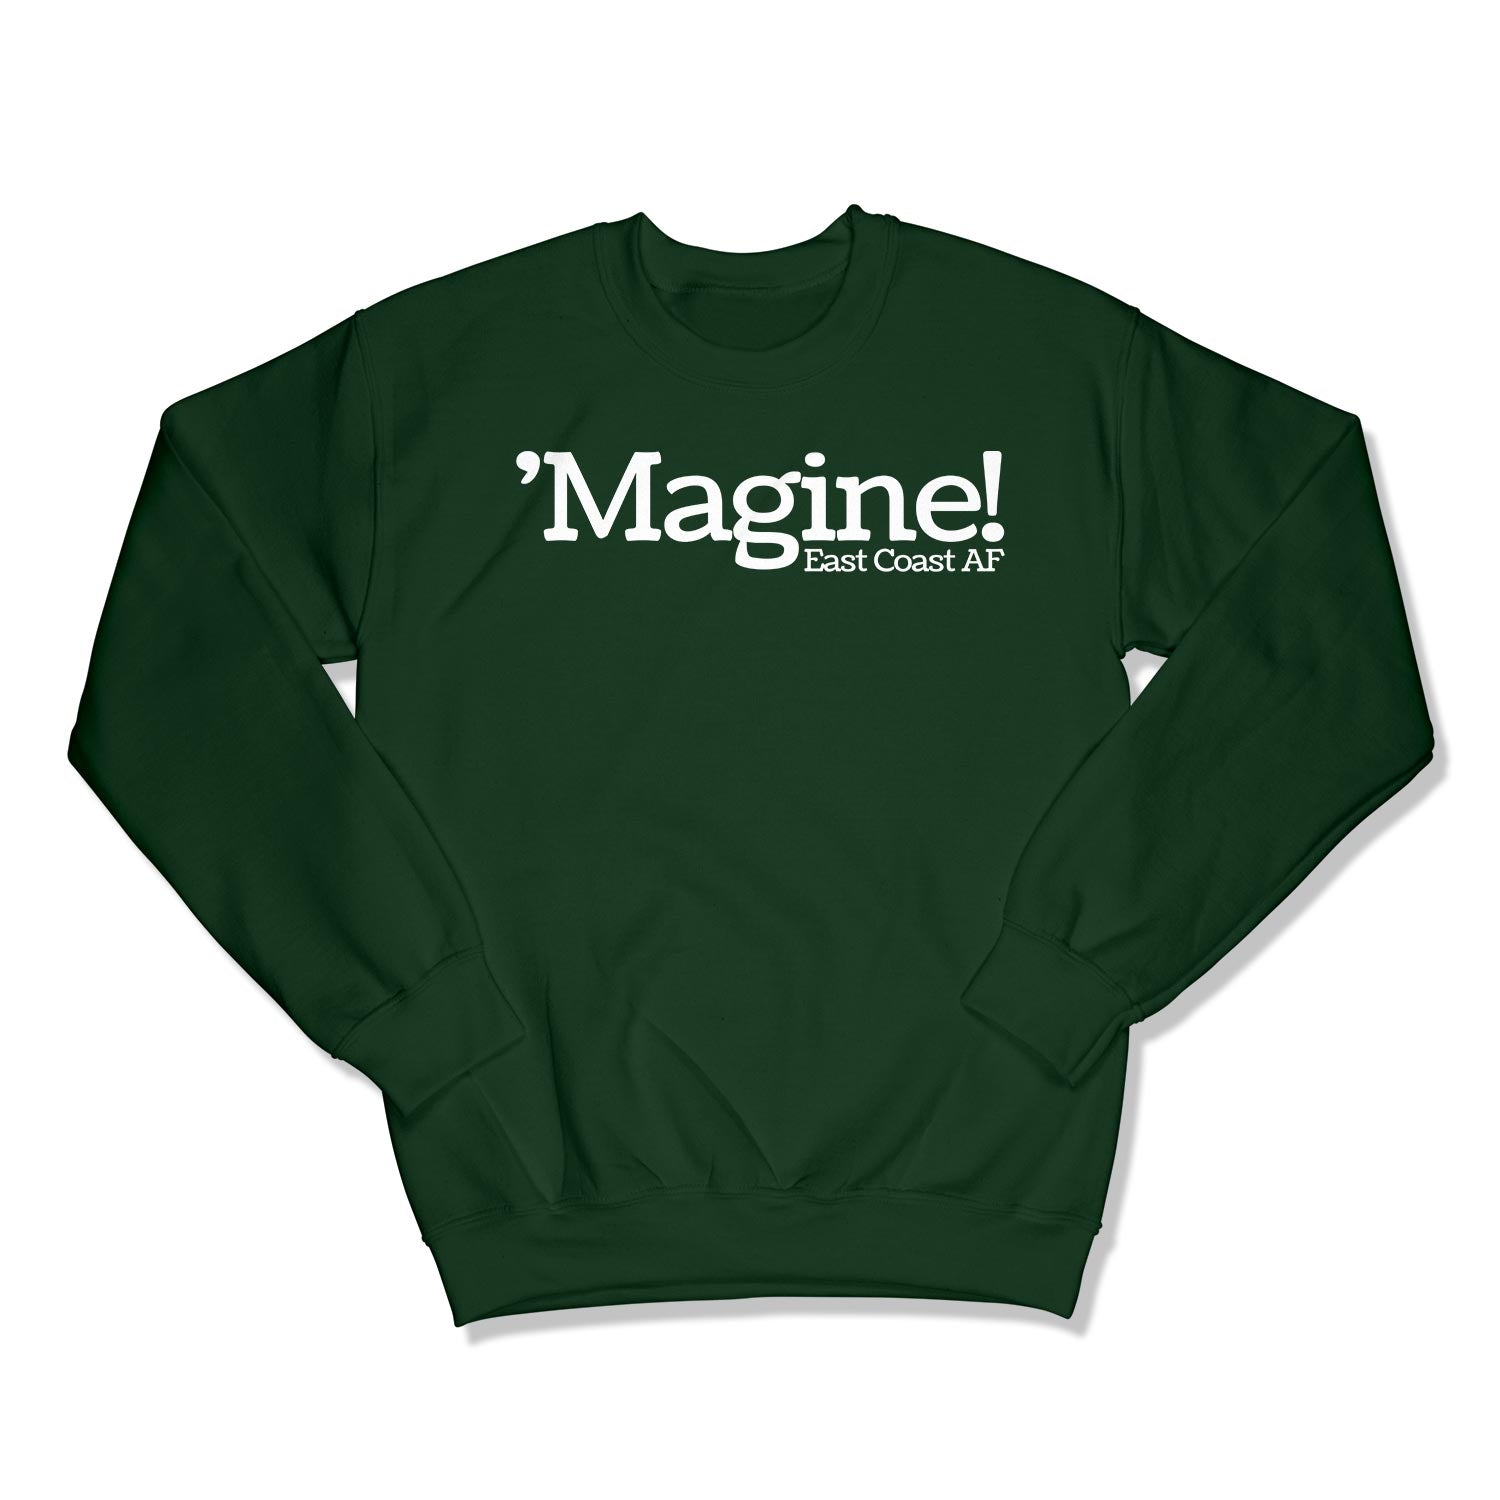 'Magine! Unisex Crewneck Sweatshirt in Color: Forest Green - East Coast AF Apparel